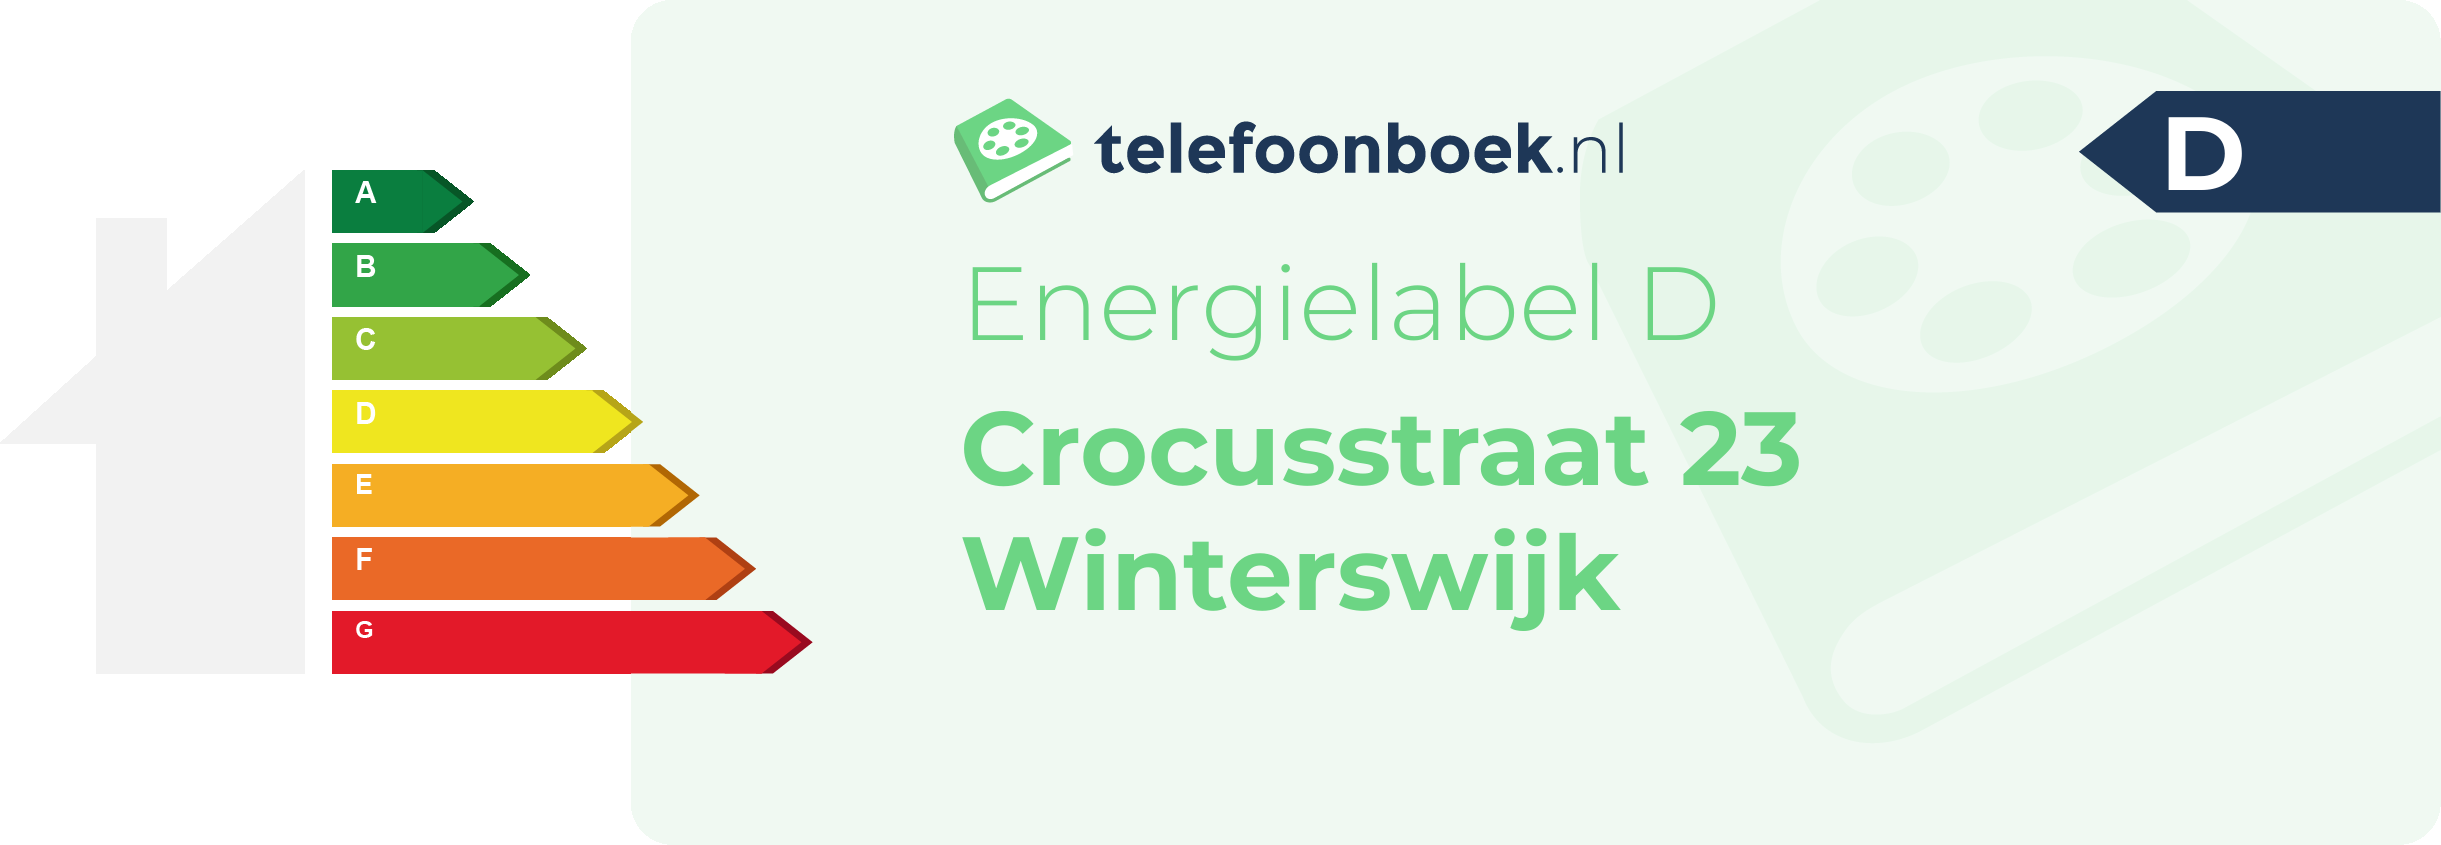 Energielabel Crocusstraat 23 Winterswijk